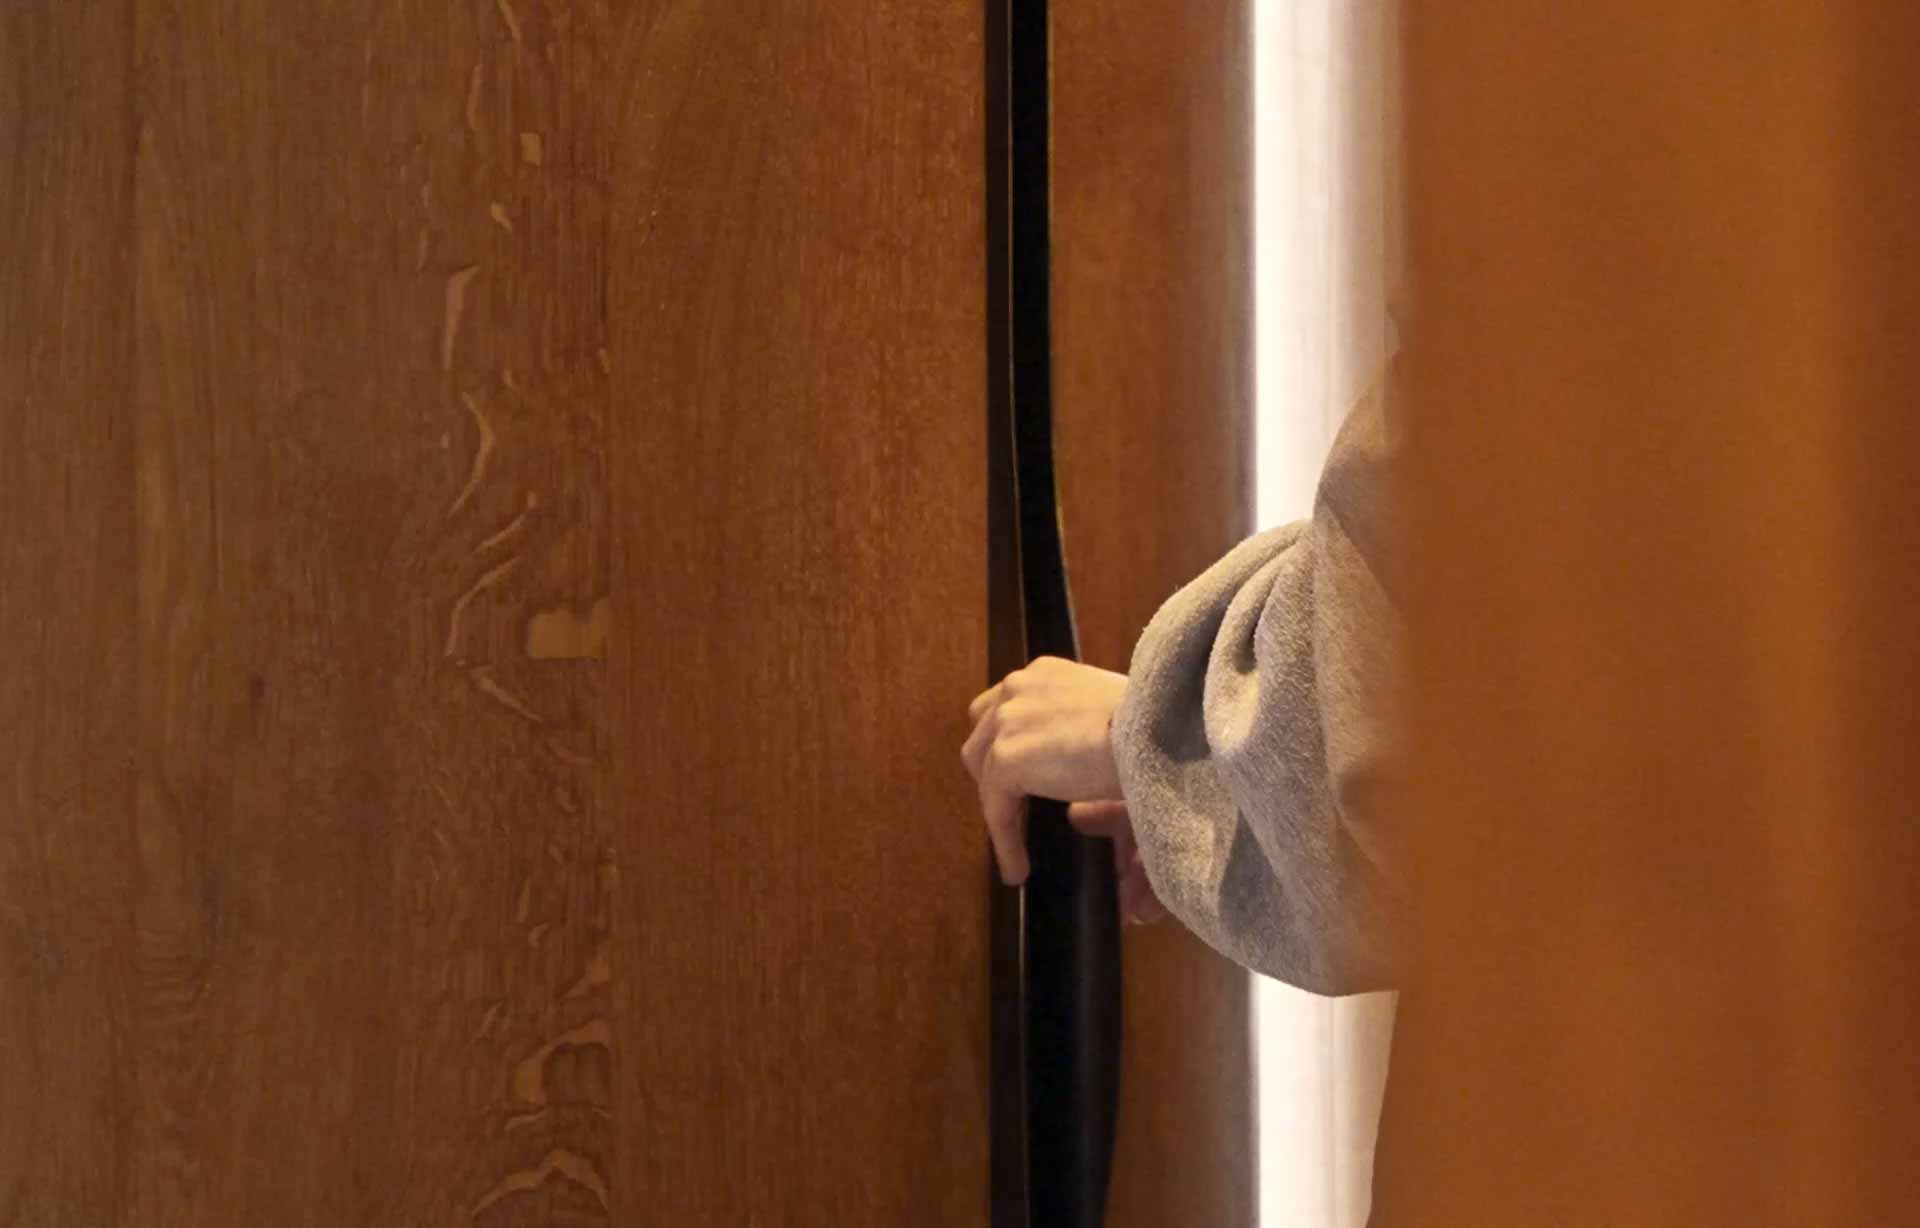 A hand opening a wooden door